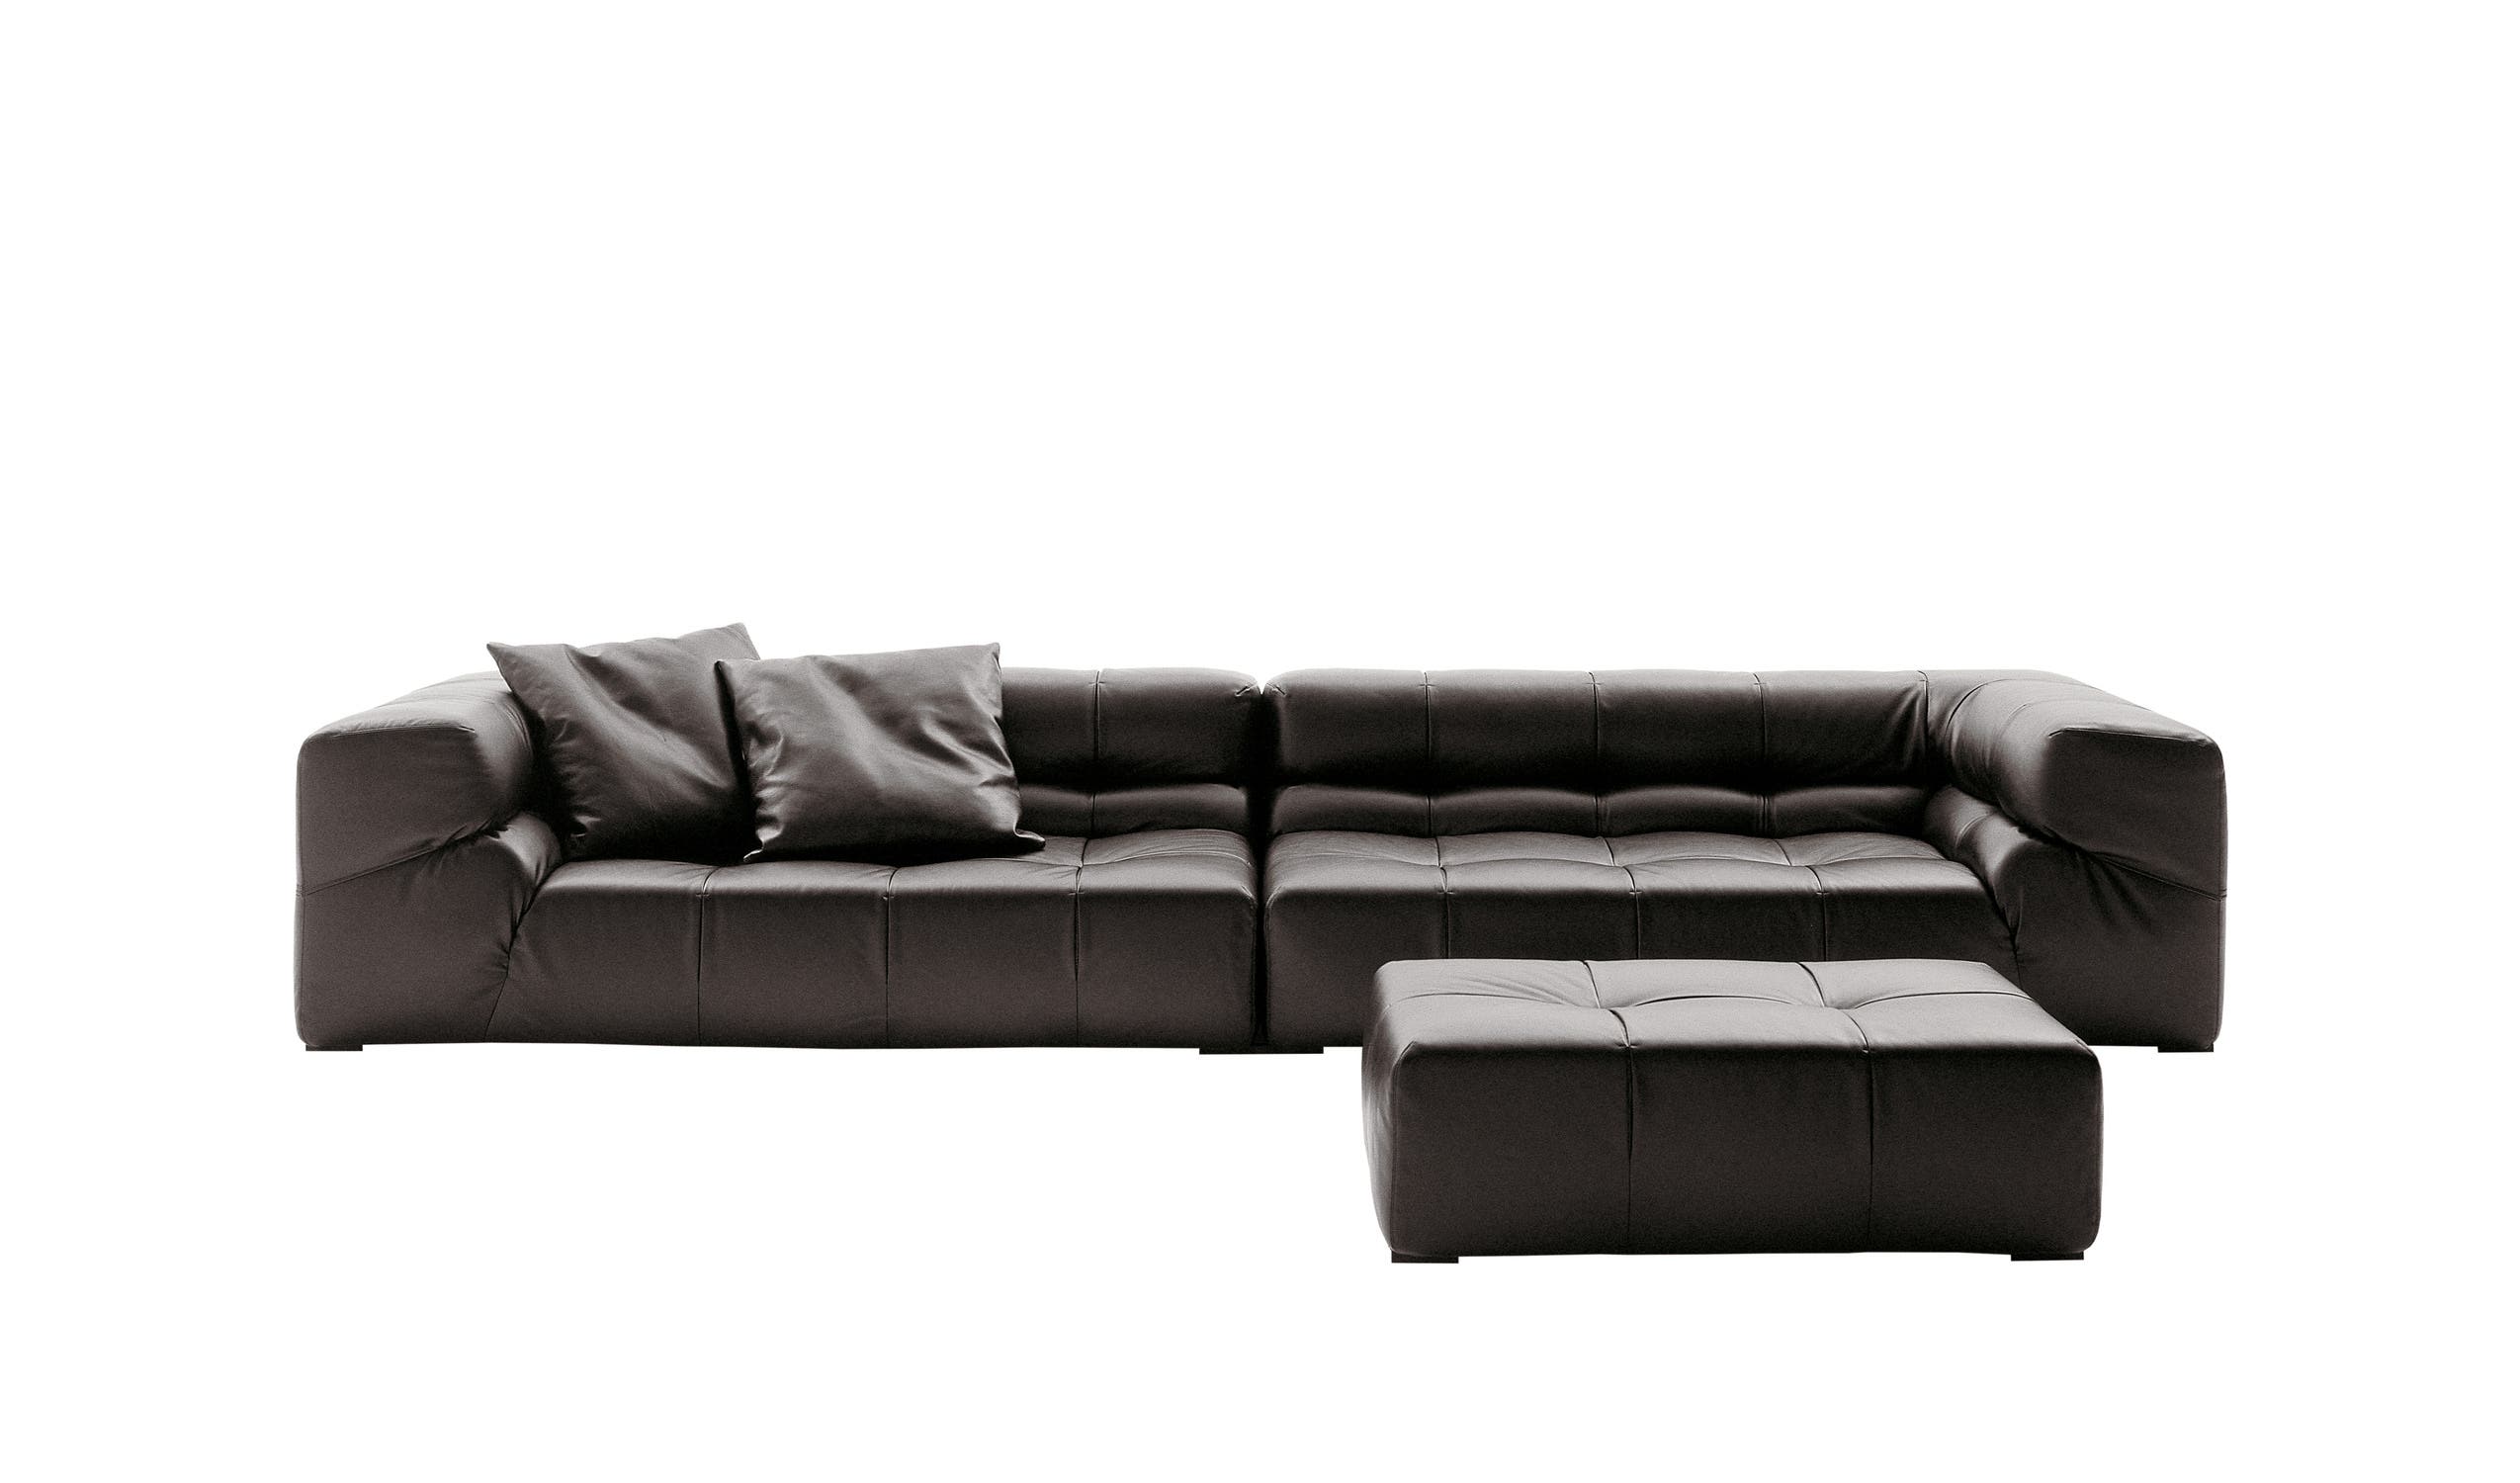 Modern designer italian sofas - Tufty-Time Sofas 8